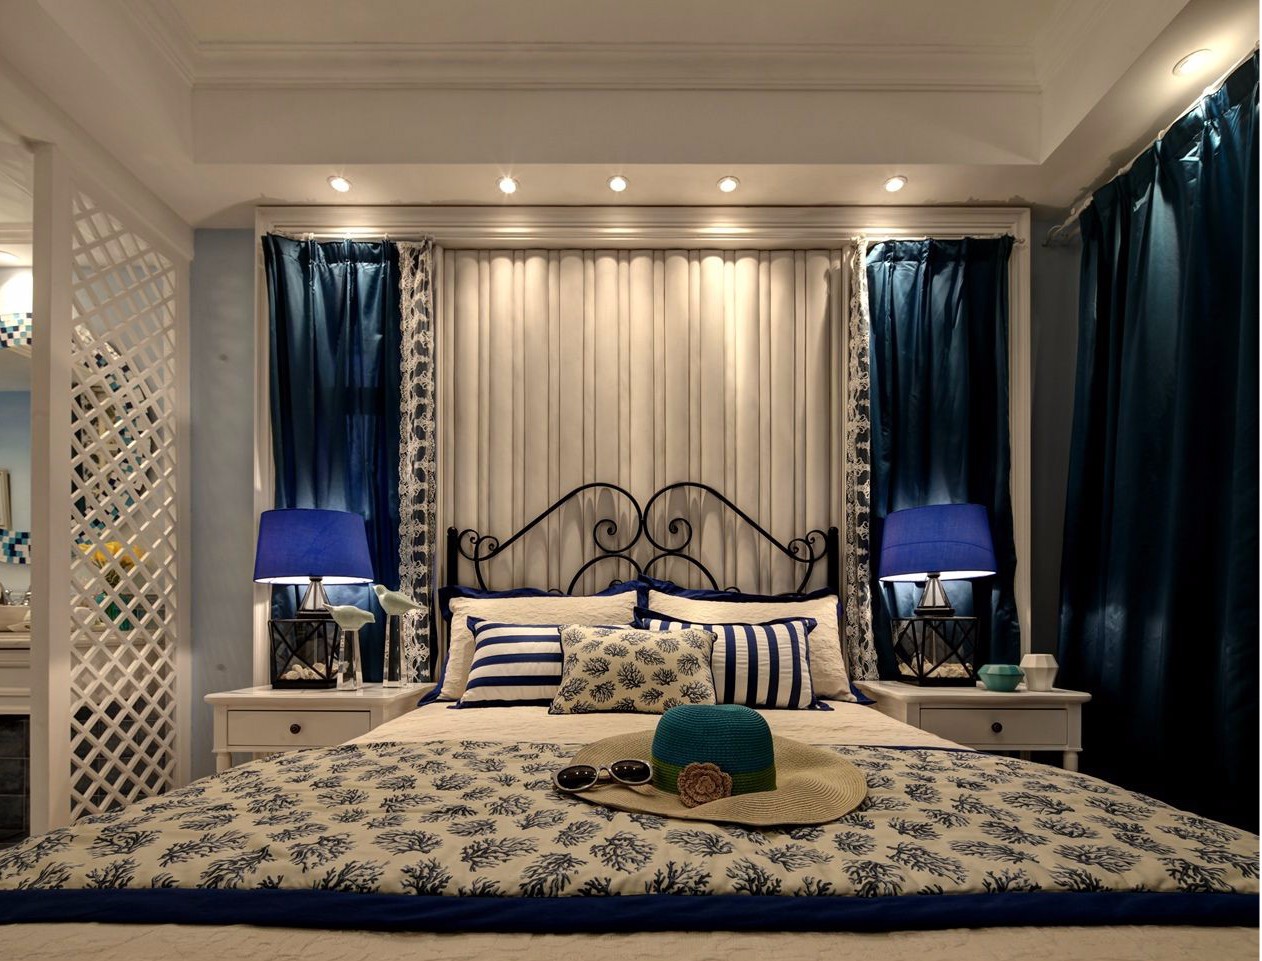 三居室装修,10-15万装修,120平米装修,卧室,地中海风格,卧室背景墙,床上用品,窗帘,蓝色